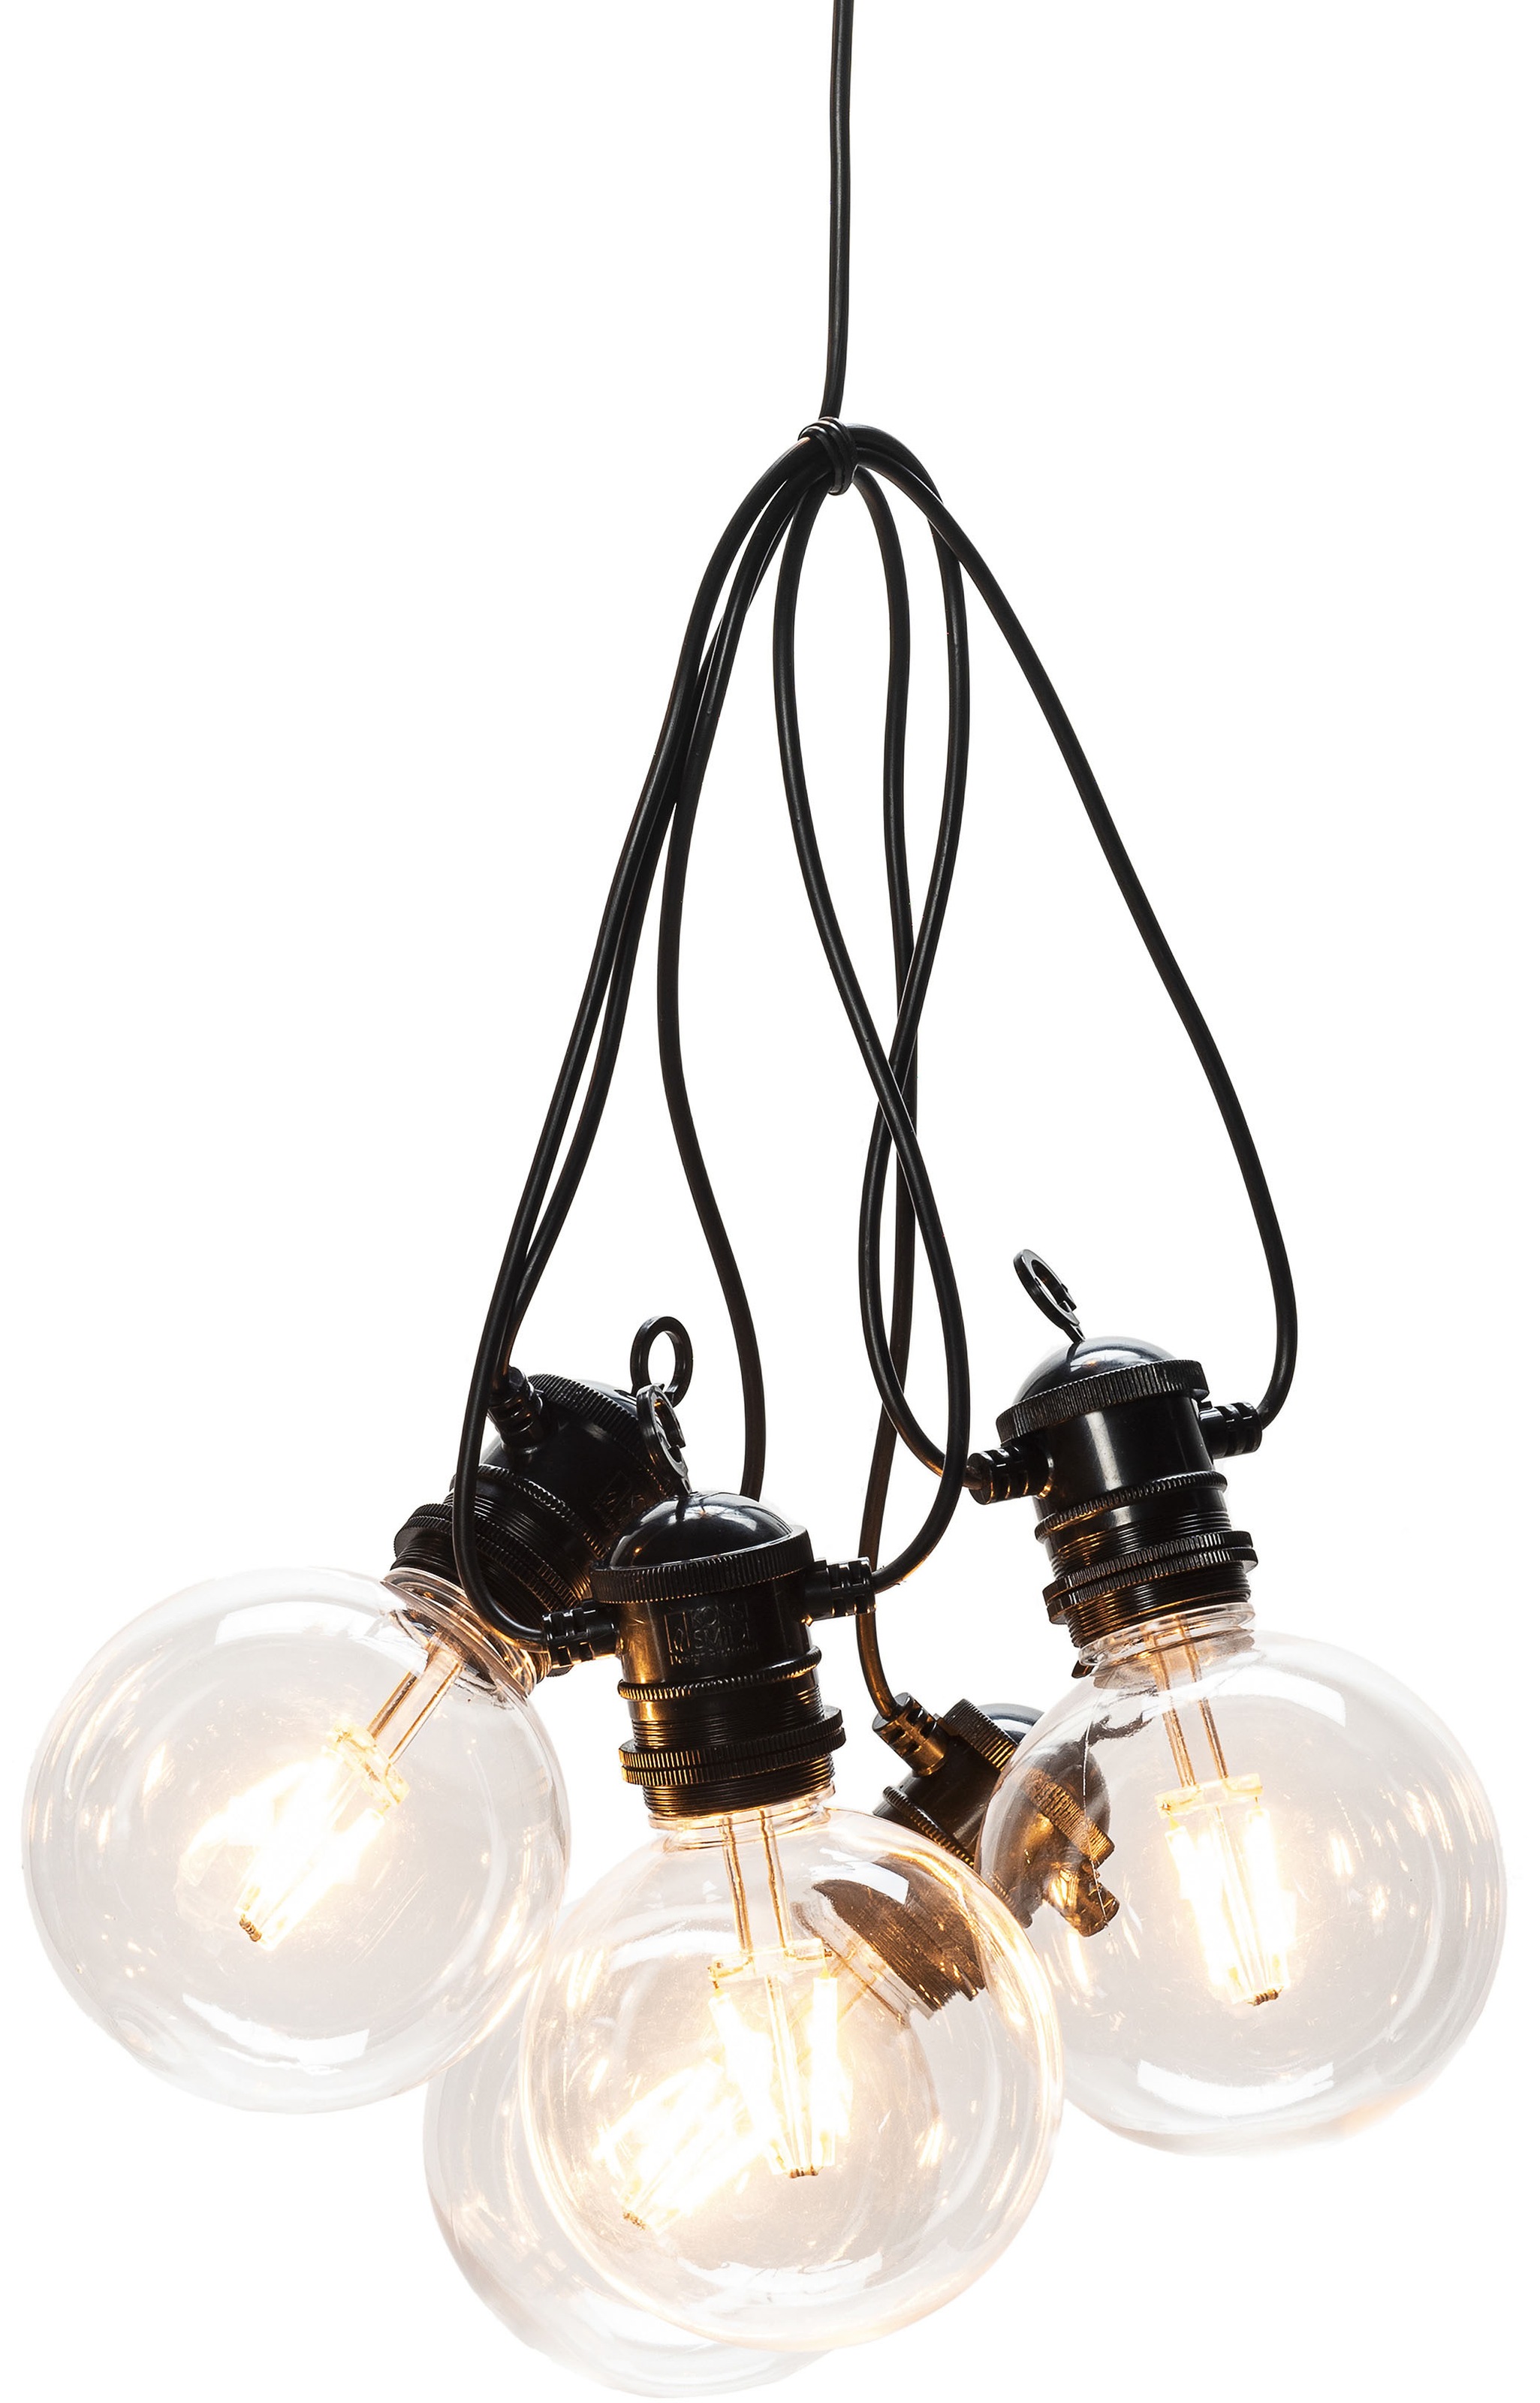 KONSTSMIDE LED-Lichterkette, 10 St.-flammig, LED globe Biergartenkette System Basis-Set, retro Design